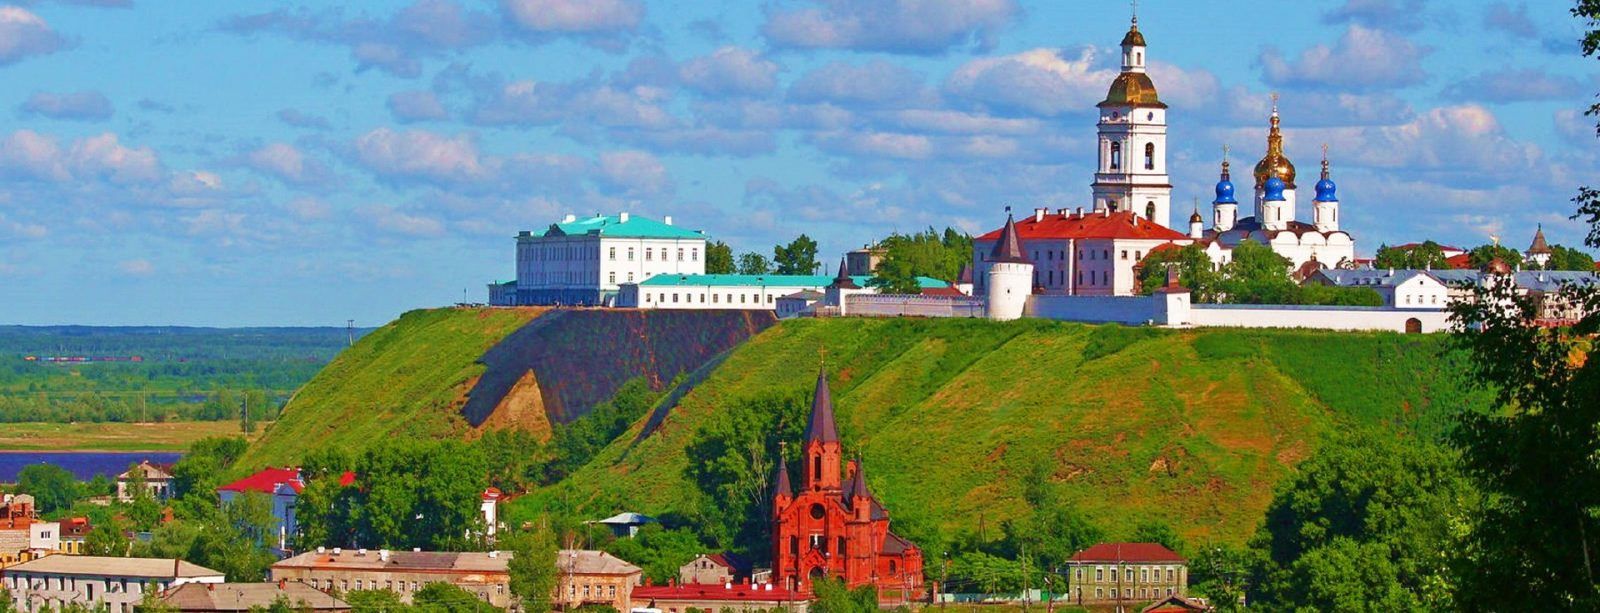 Тобольск — имперская столица Сибири